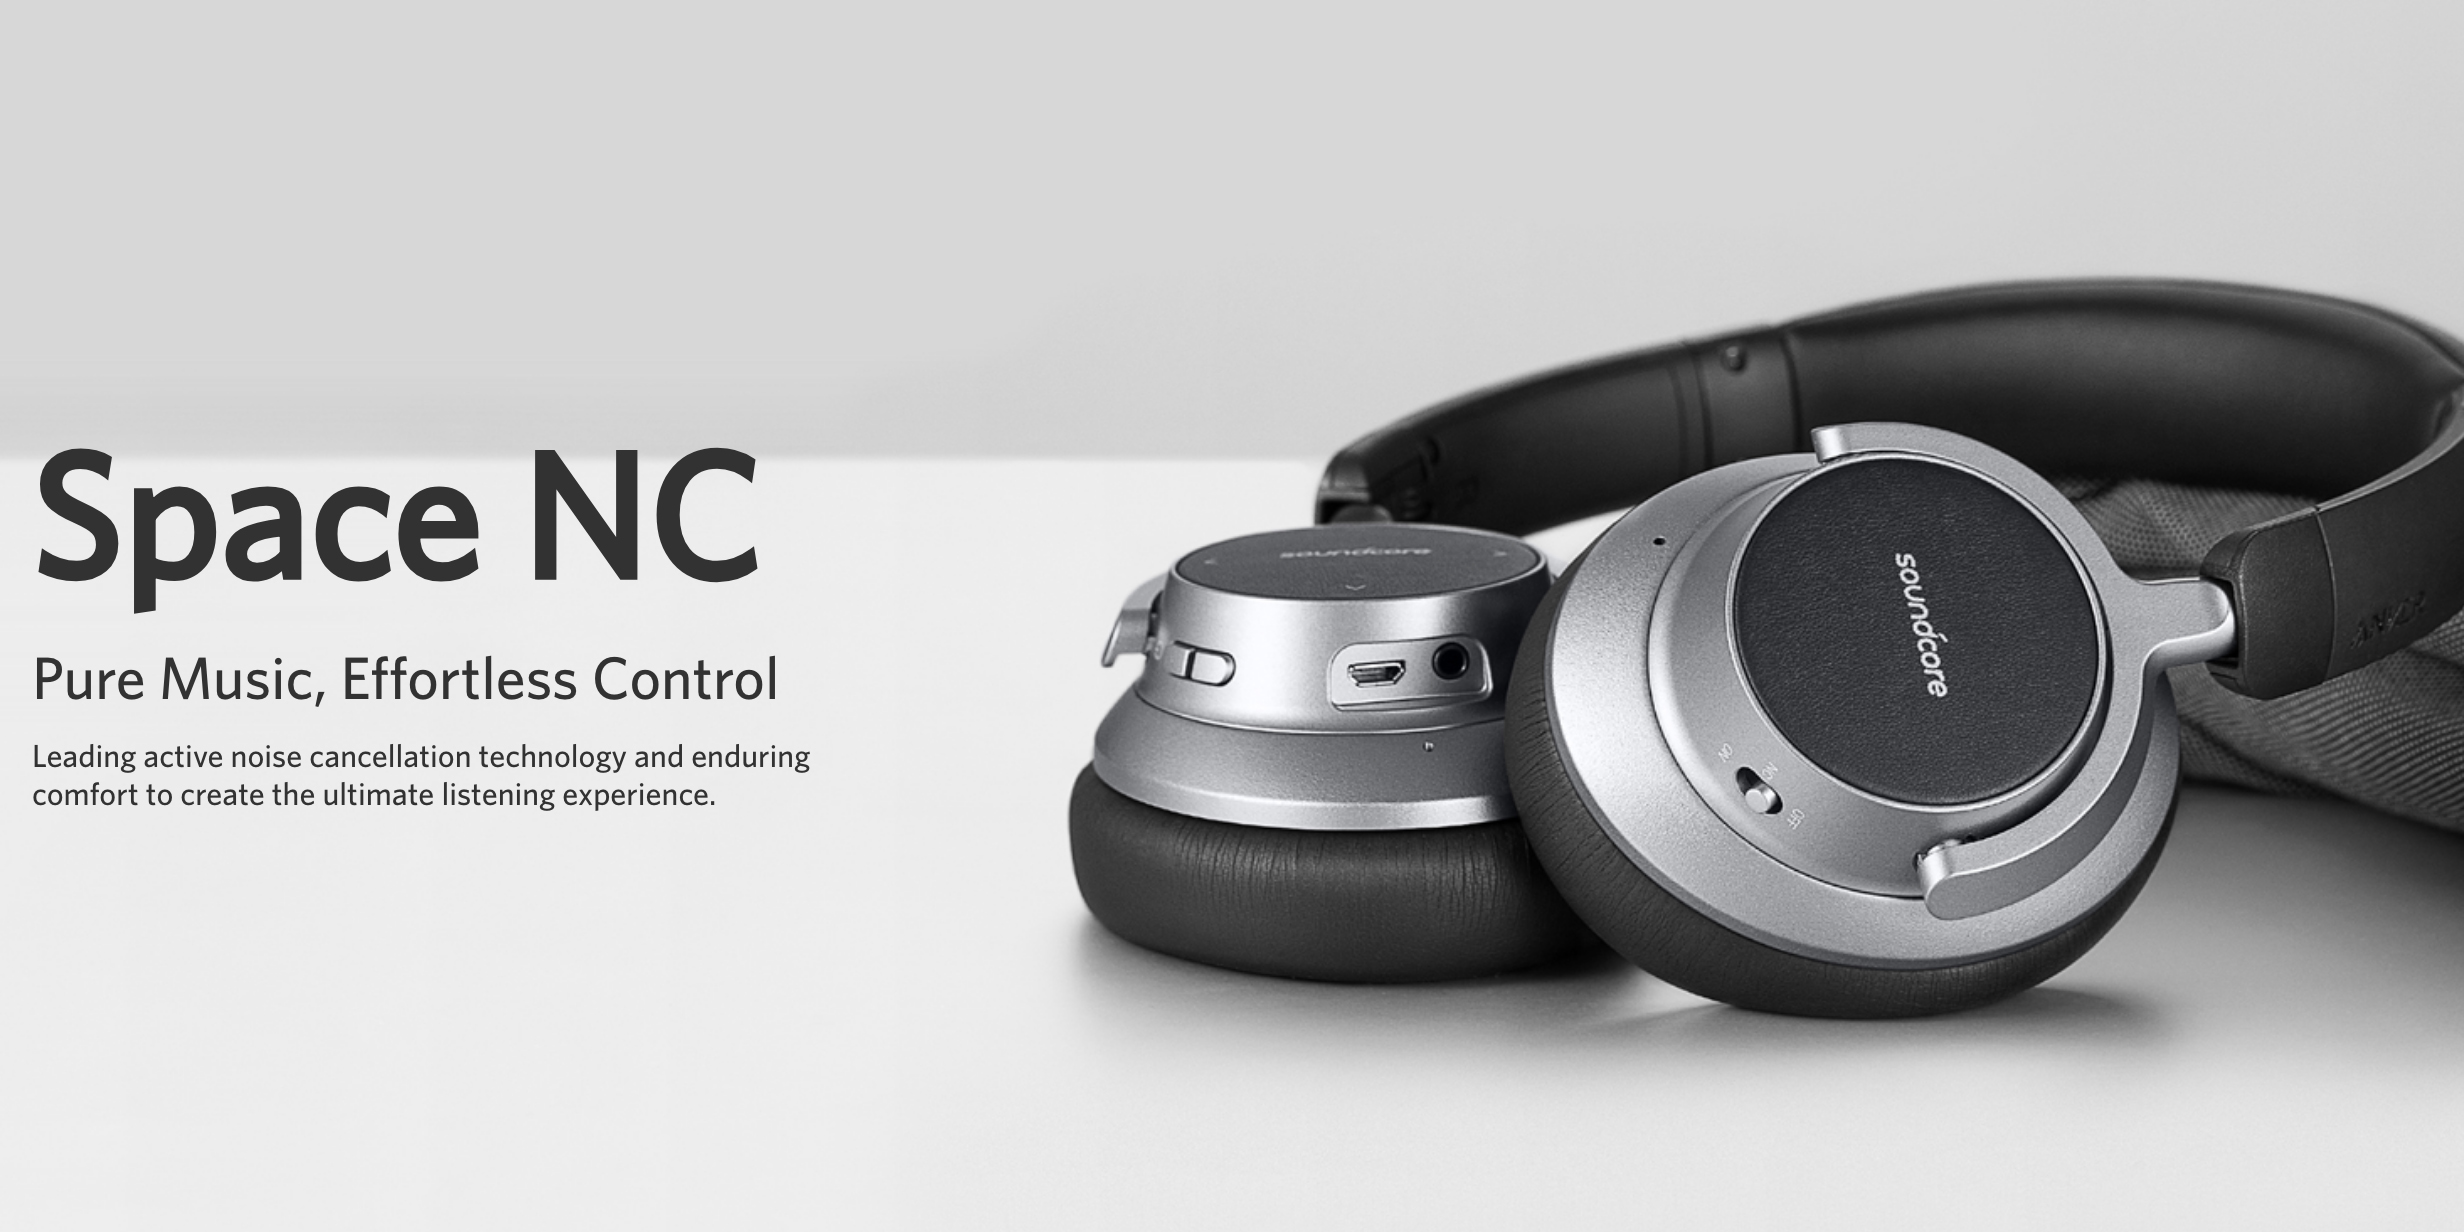 unveils new Soundcore Space NC headphones, affordable soundbar